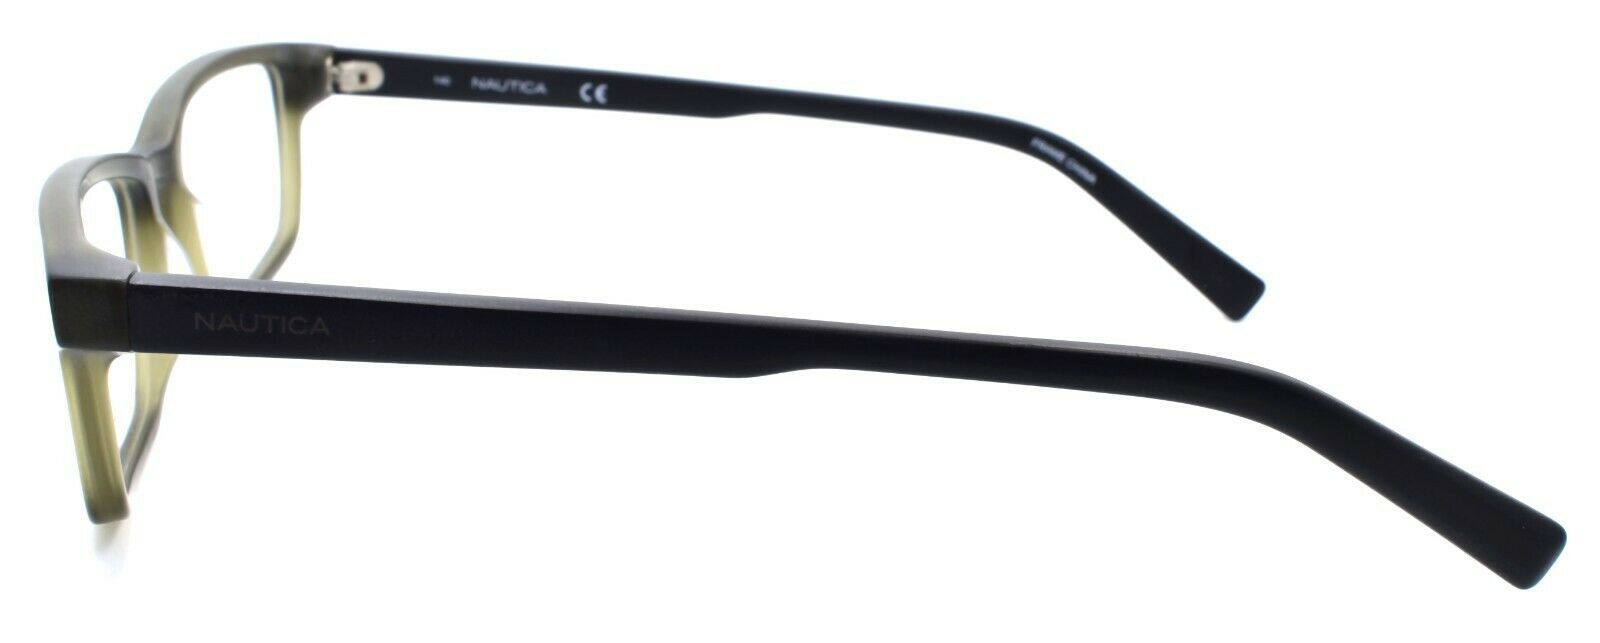 3-Nautica N8146 325 Men's Eyeglasses Frames 53-18-140 Matte Olive-688940460513-IKSpecs